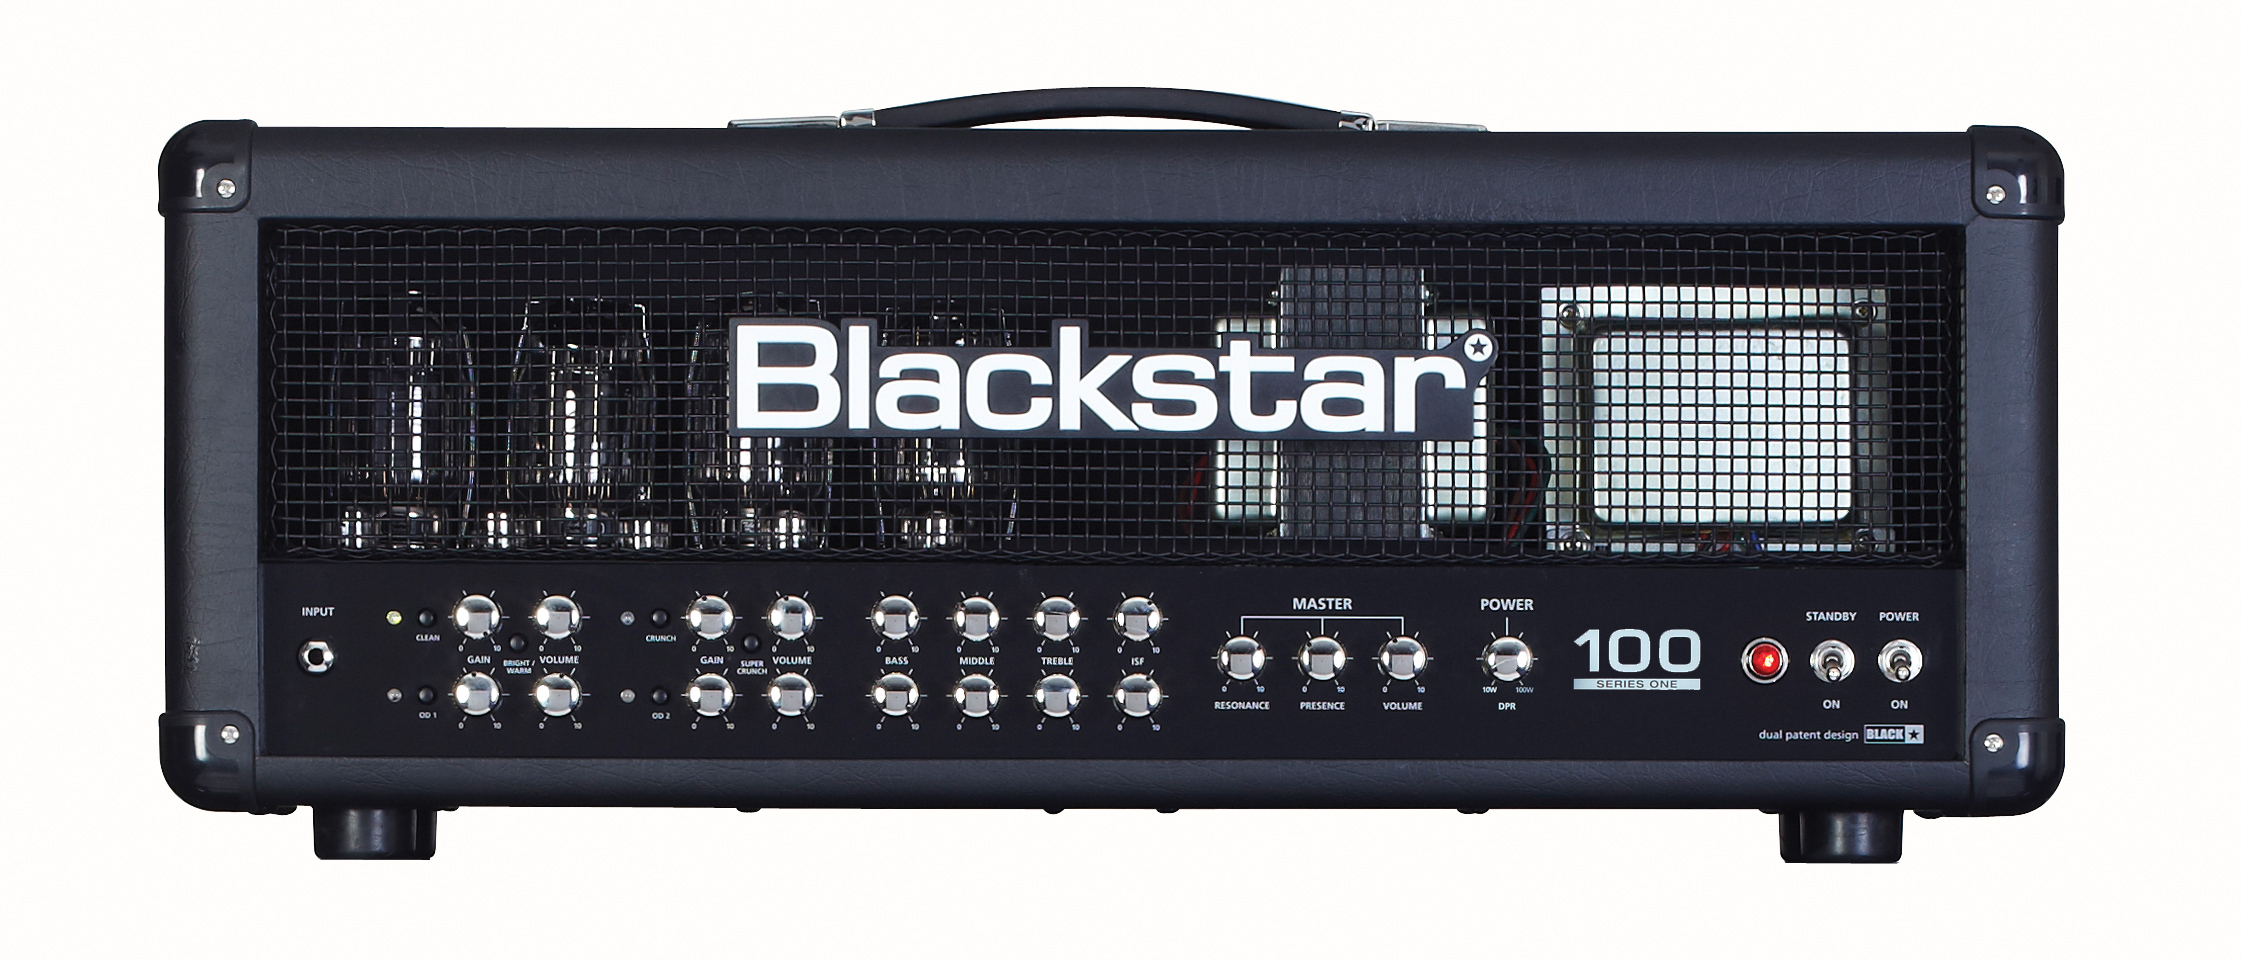 Blackstar Amplification Blackstar S1-104EL34 Guitar Amplifier Head, 100 Watts